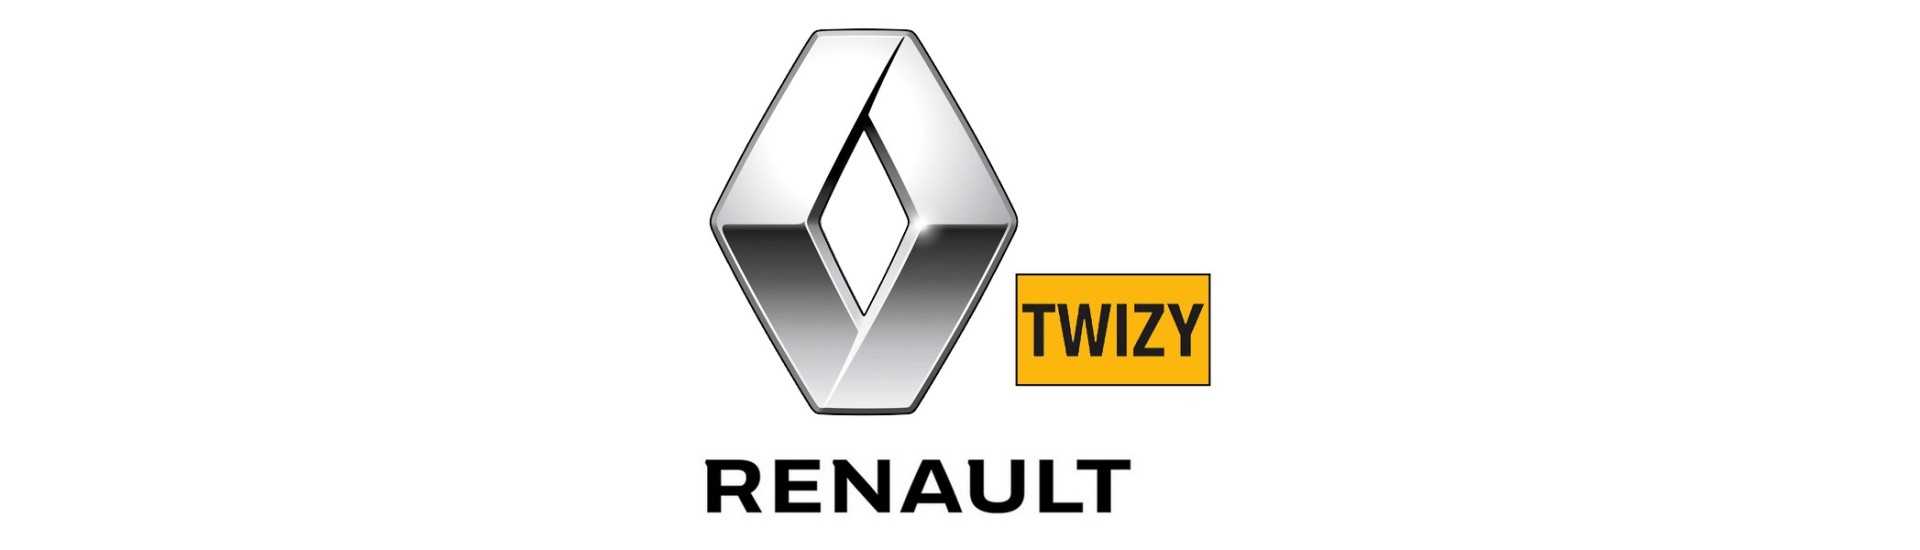 Commodo till bästa pris för bil utan tillstånd Renault Twizy